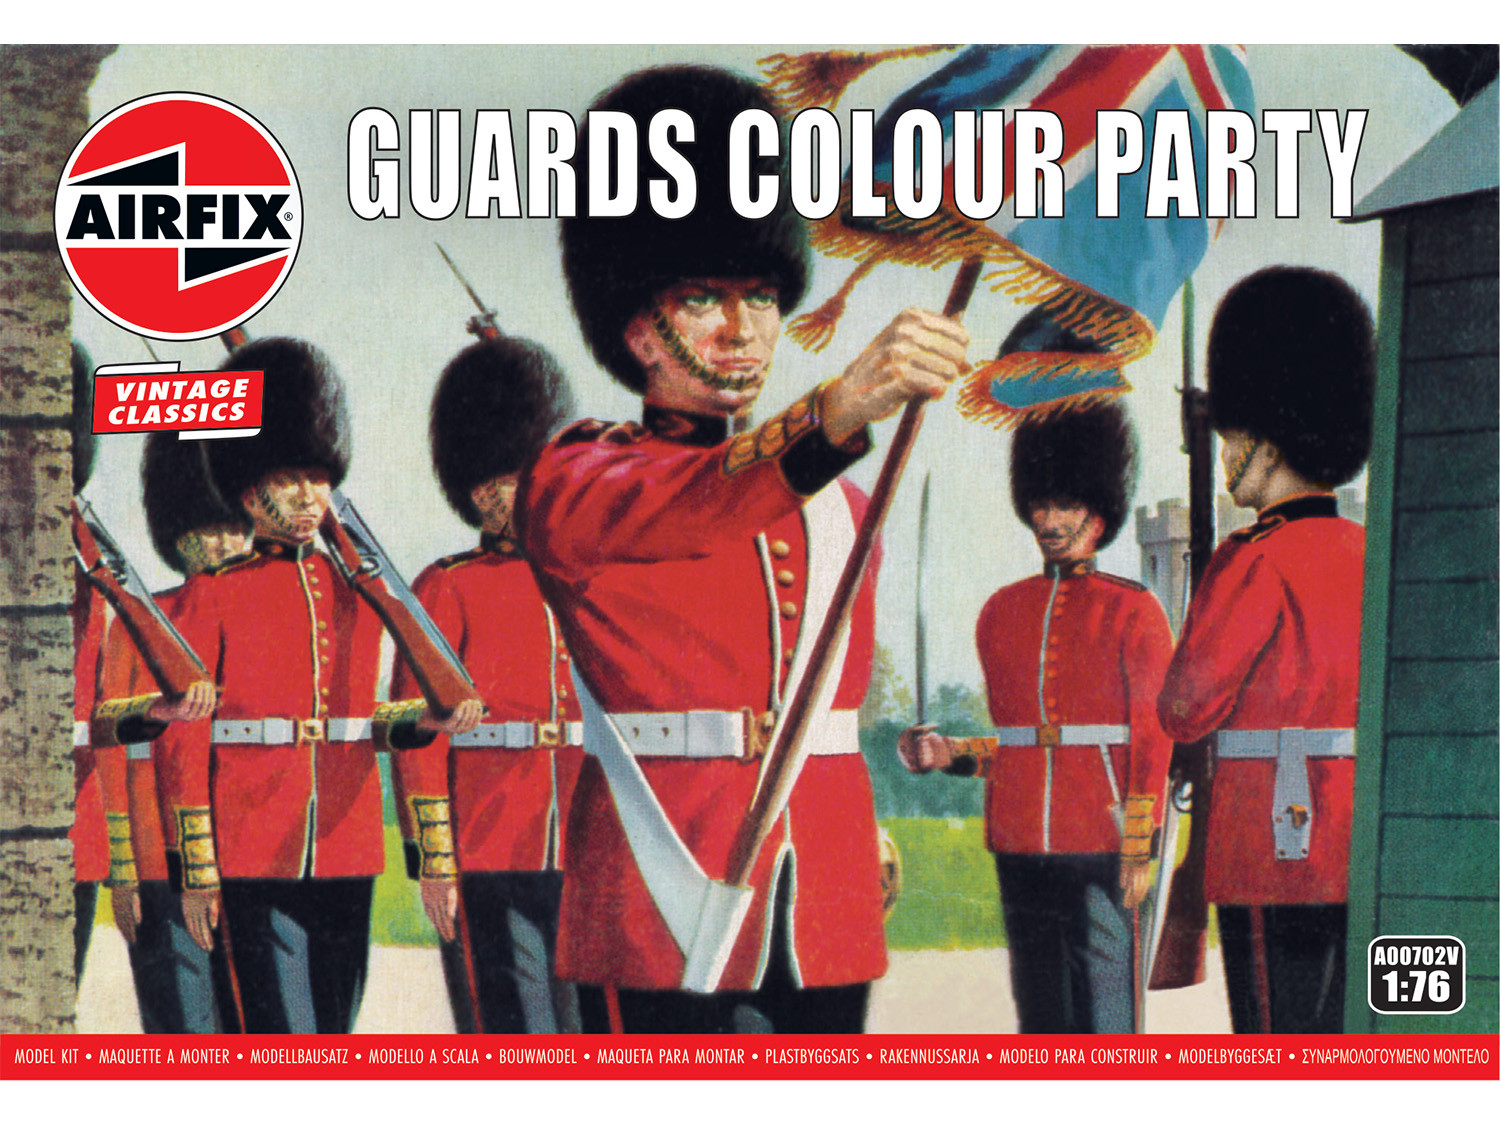 *Vintage Classics Guards Colour Party (1:76 Scale)